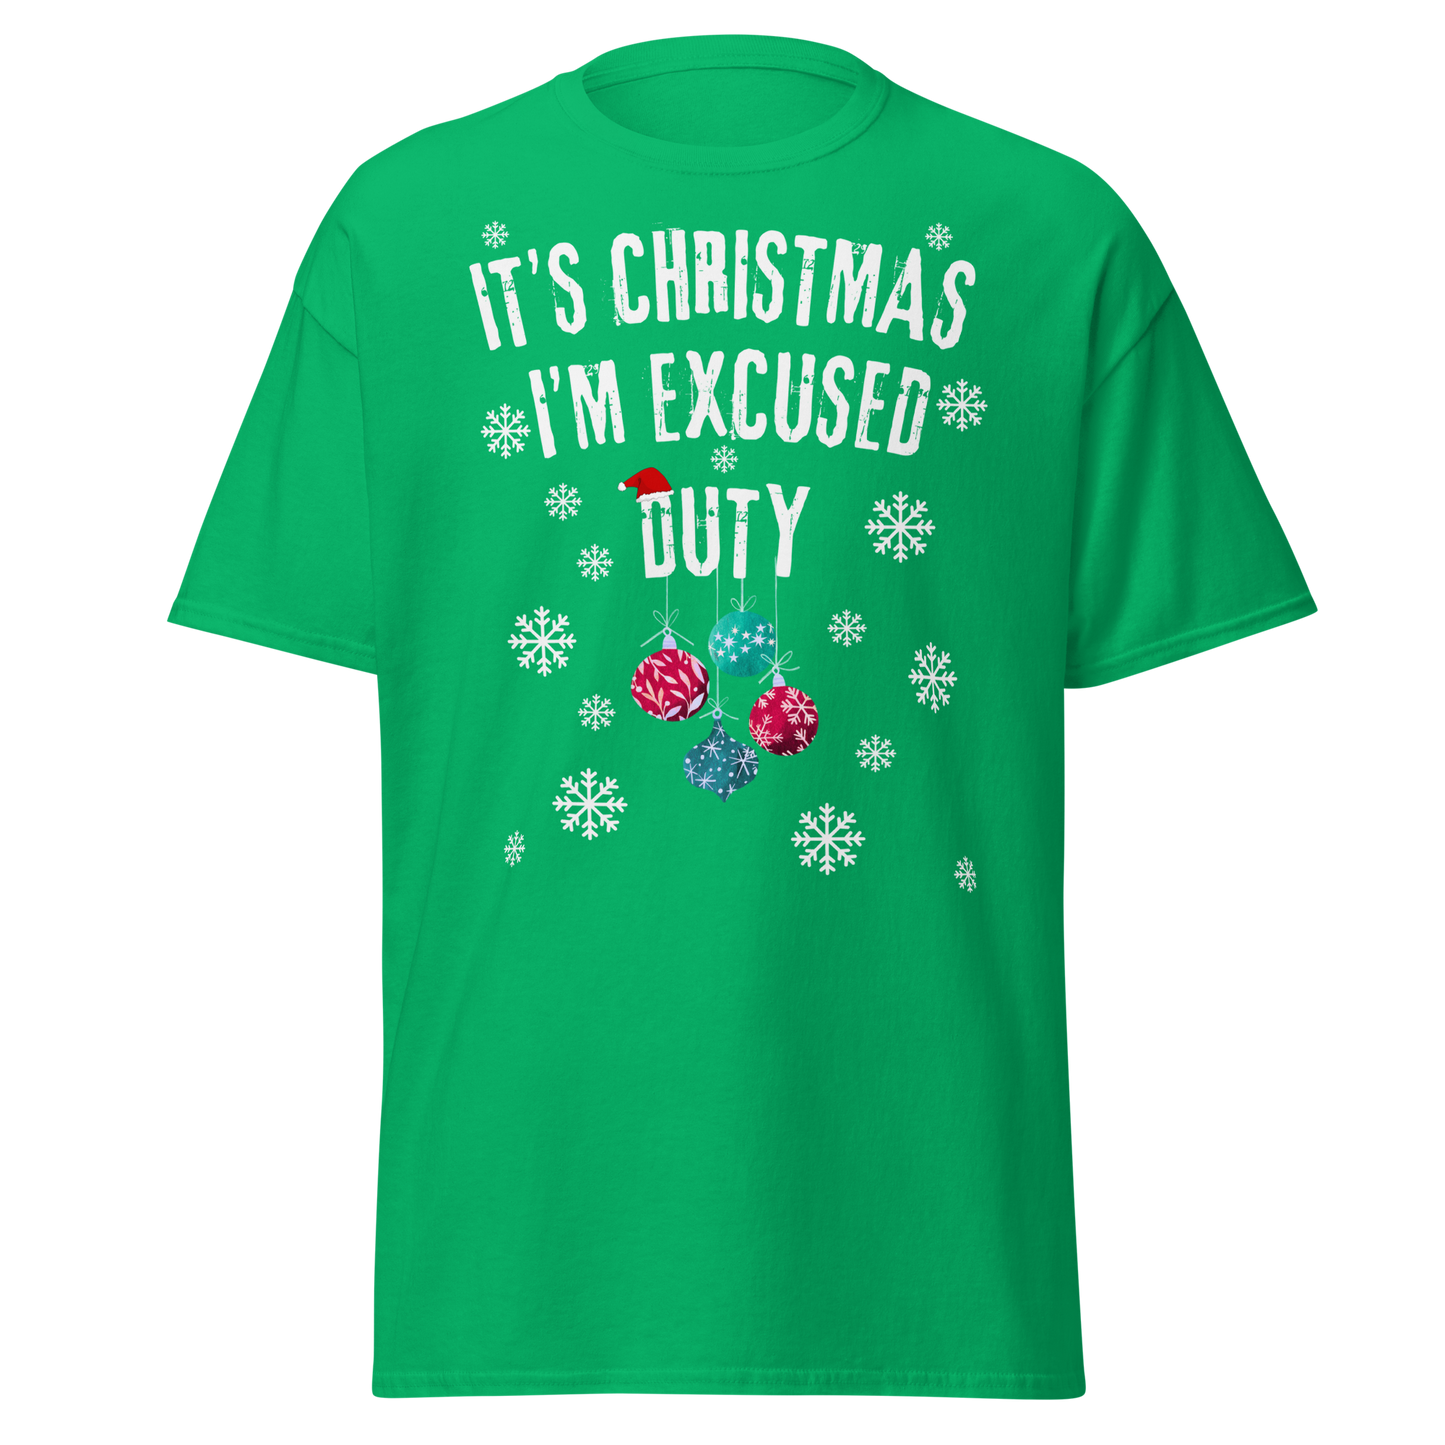 It's Christmas, I'm Excused Duty (Festive t-shirt)